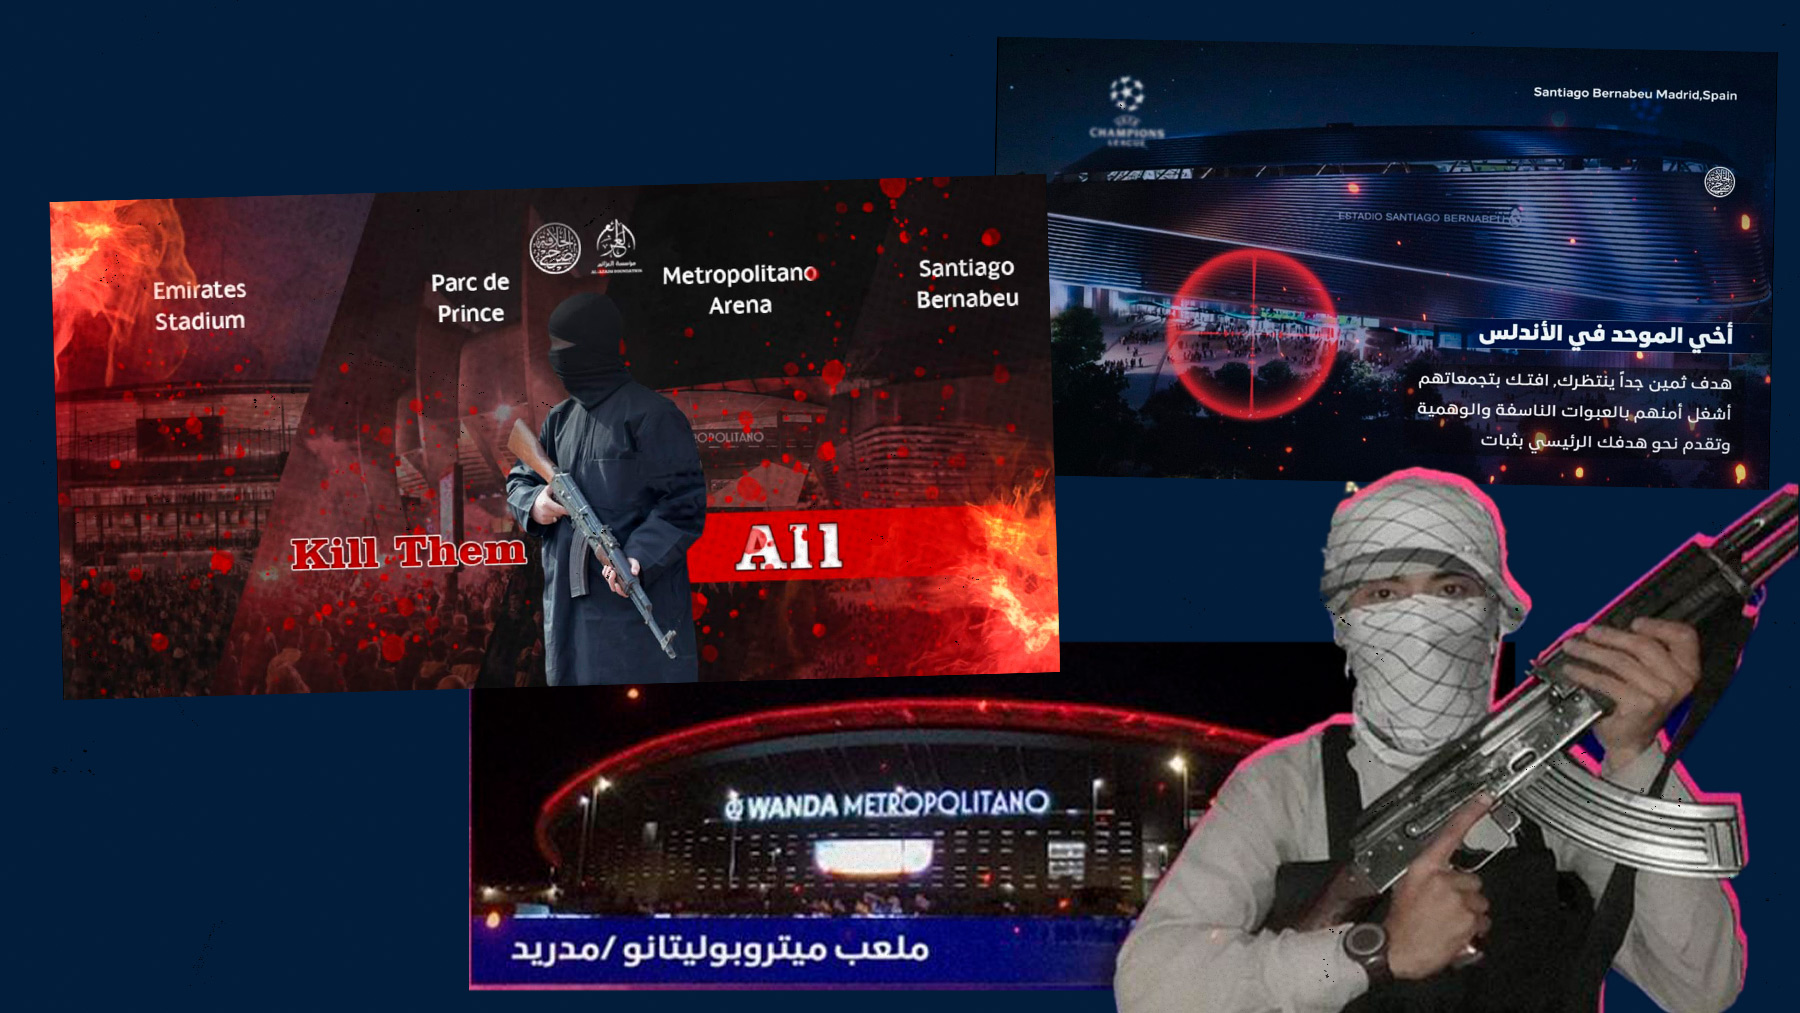 La propaganda yihadista anima a sus seguidores a atentar contra los estadios Champions.